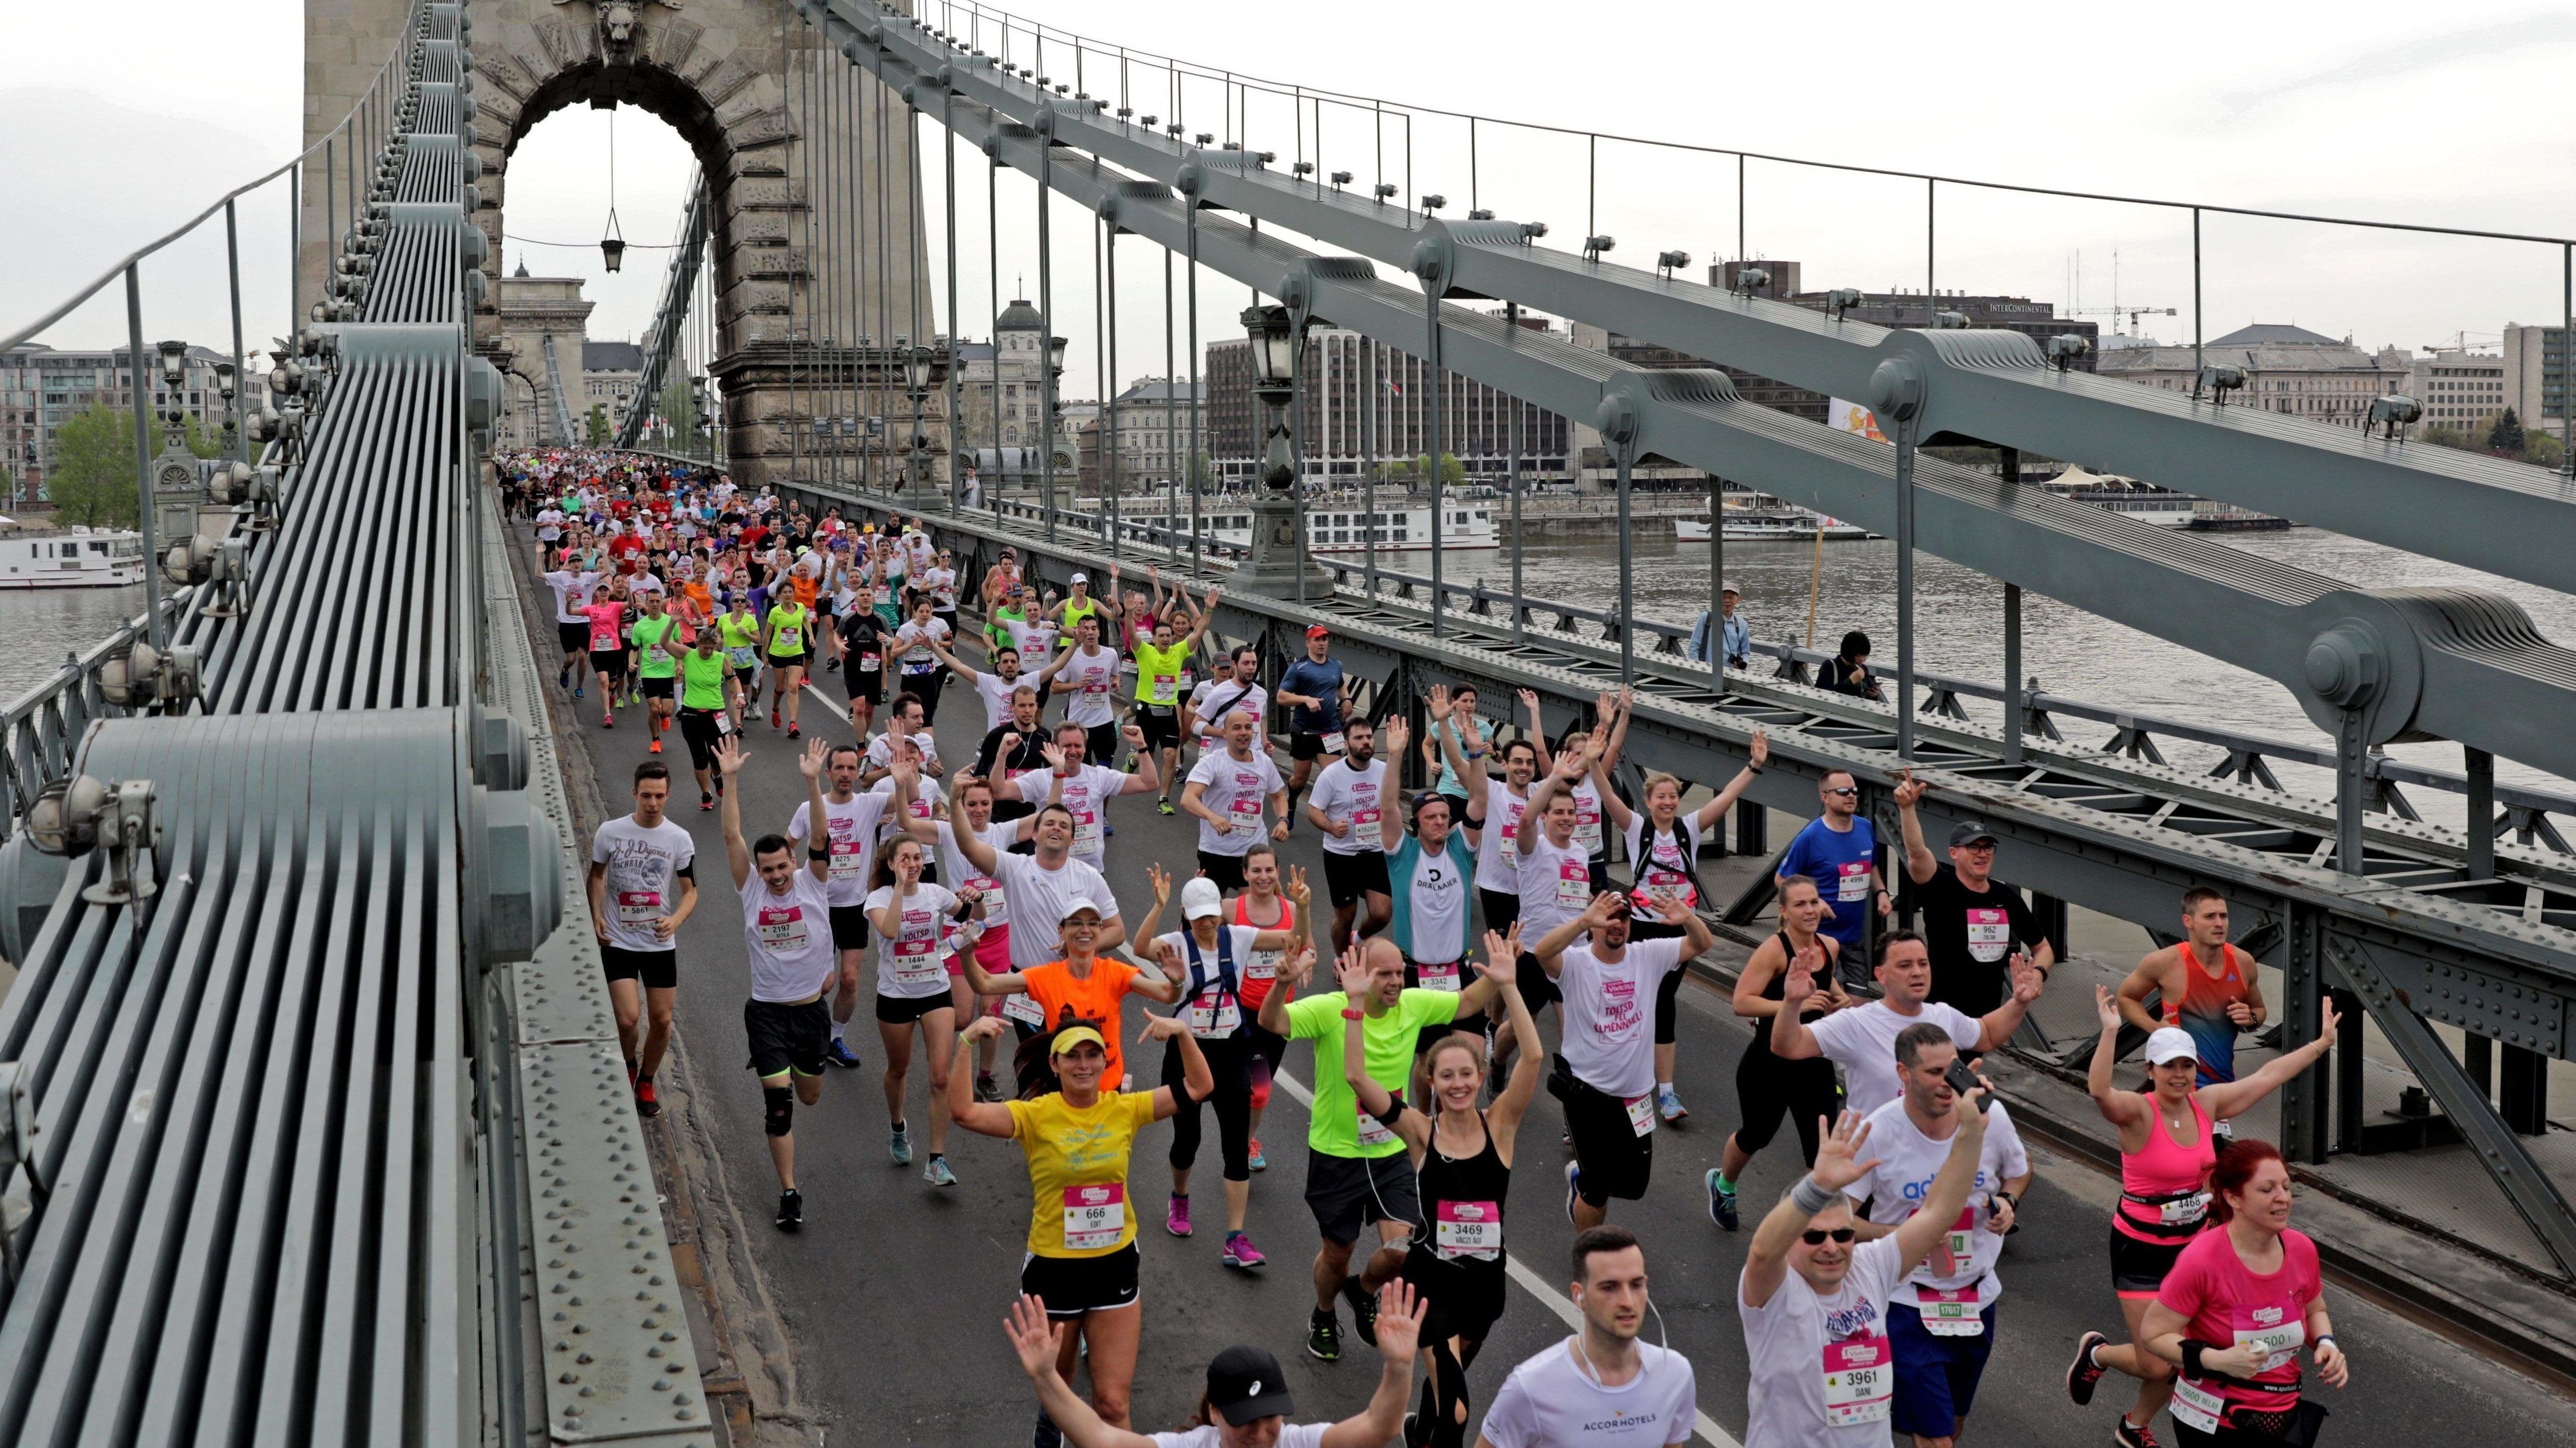 Futóverseny miatt zárnak le több helyszínt vasárnap Budapesten